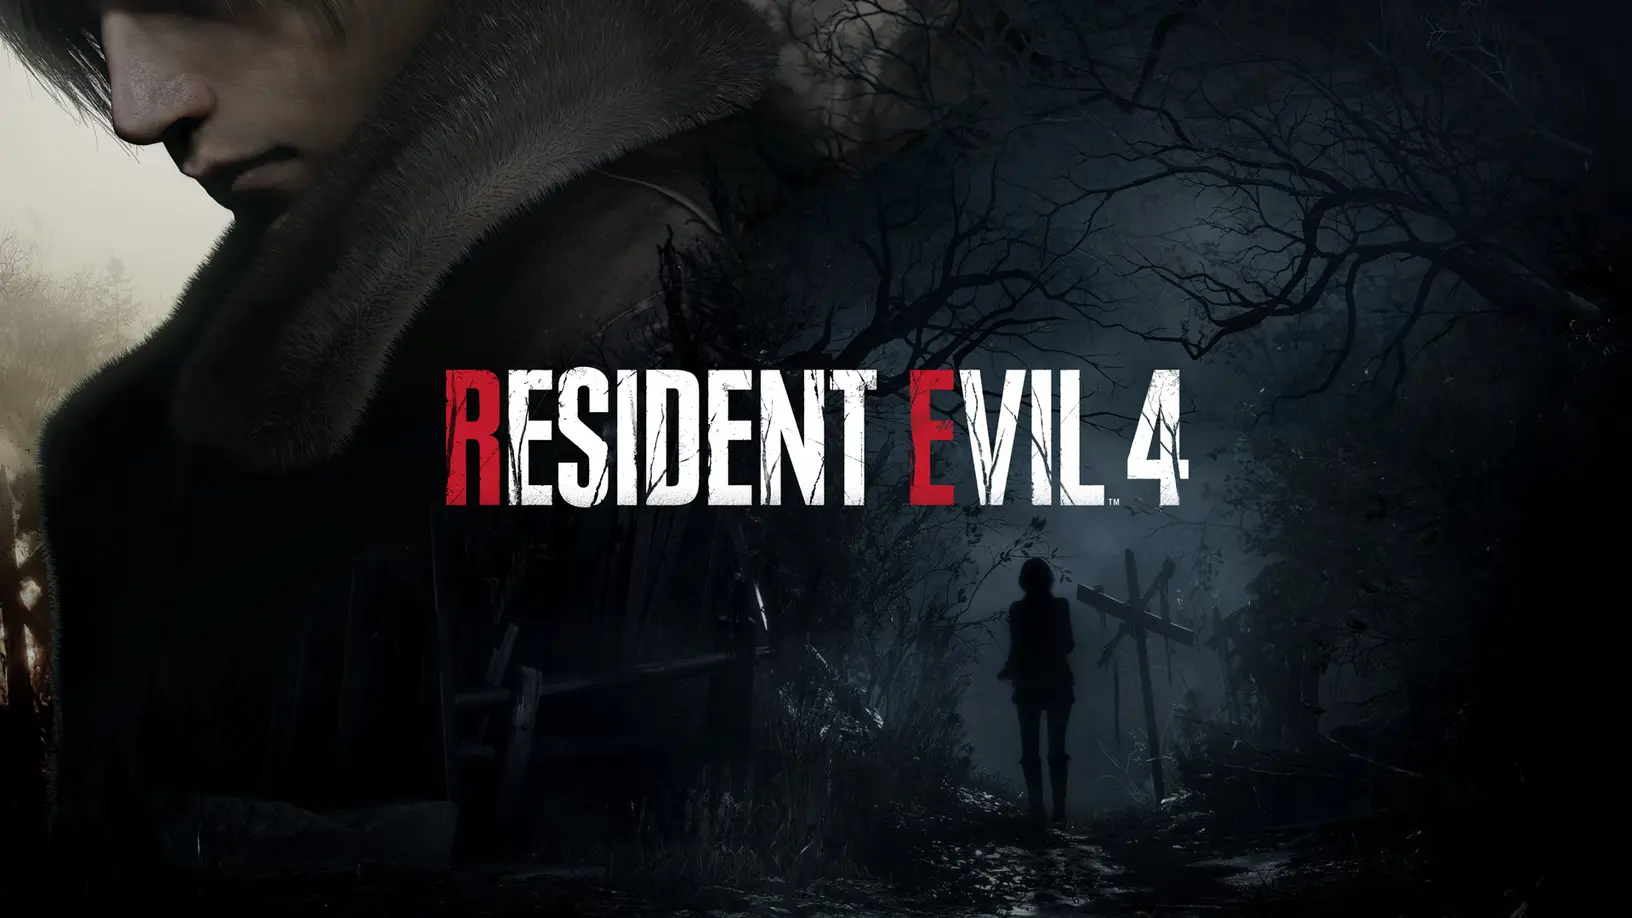 capcom resident evil 4 remake için yeni oyun görüntüleri paylaştı!